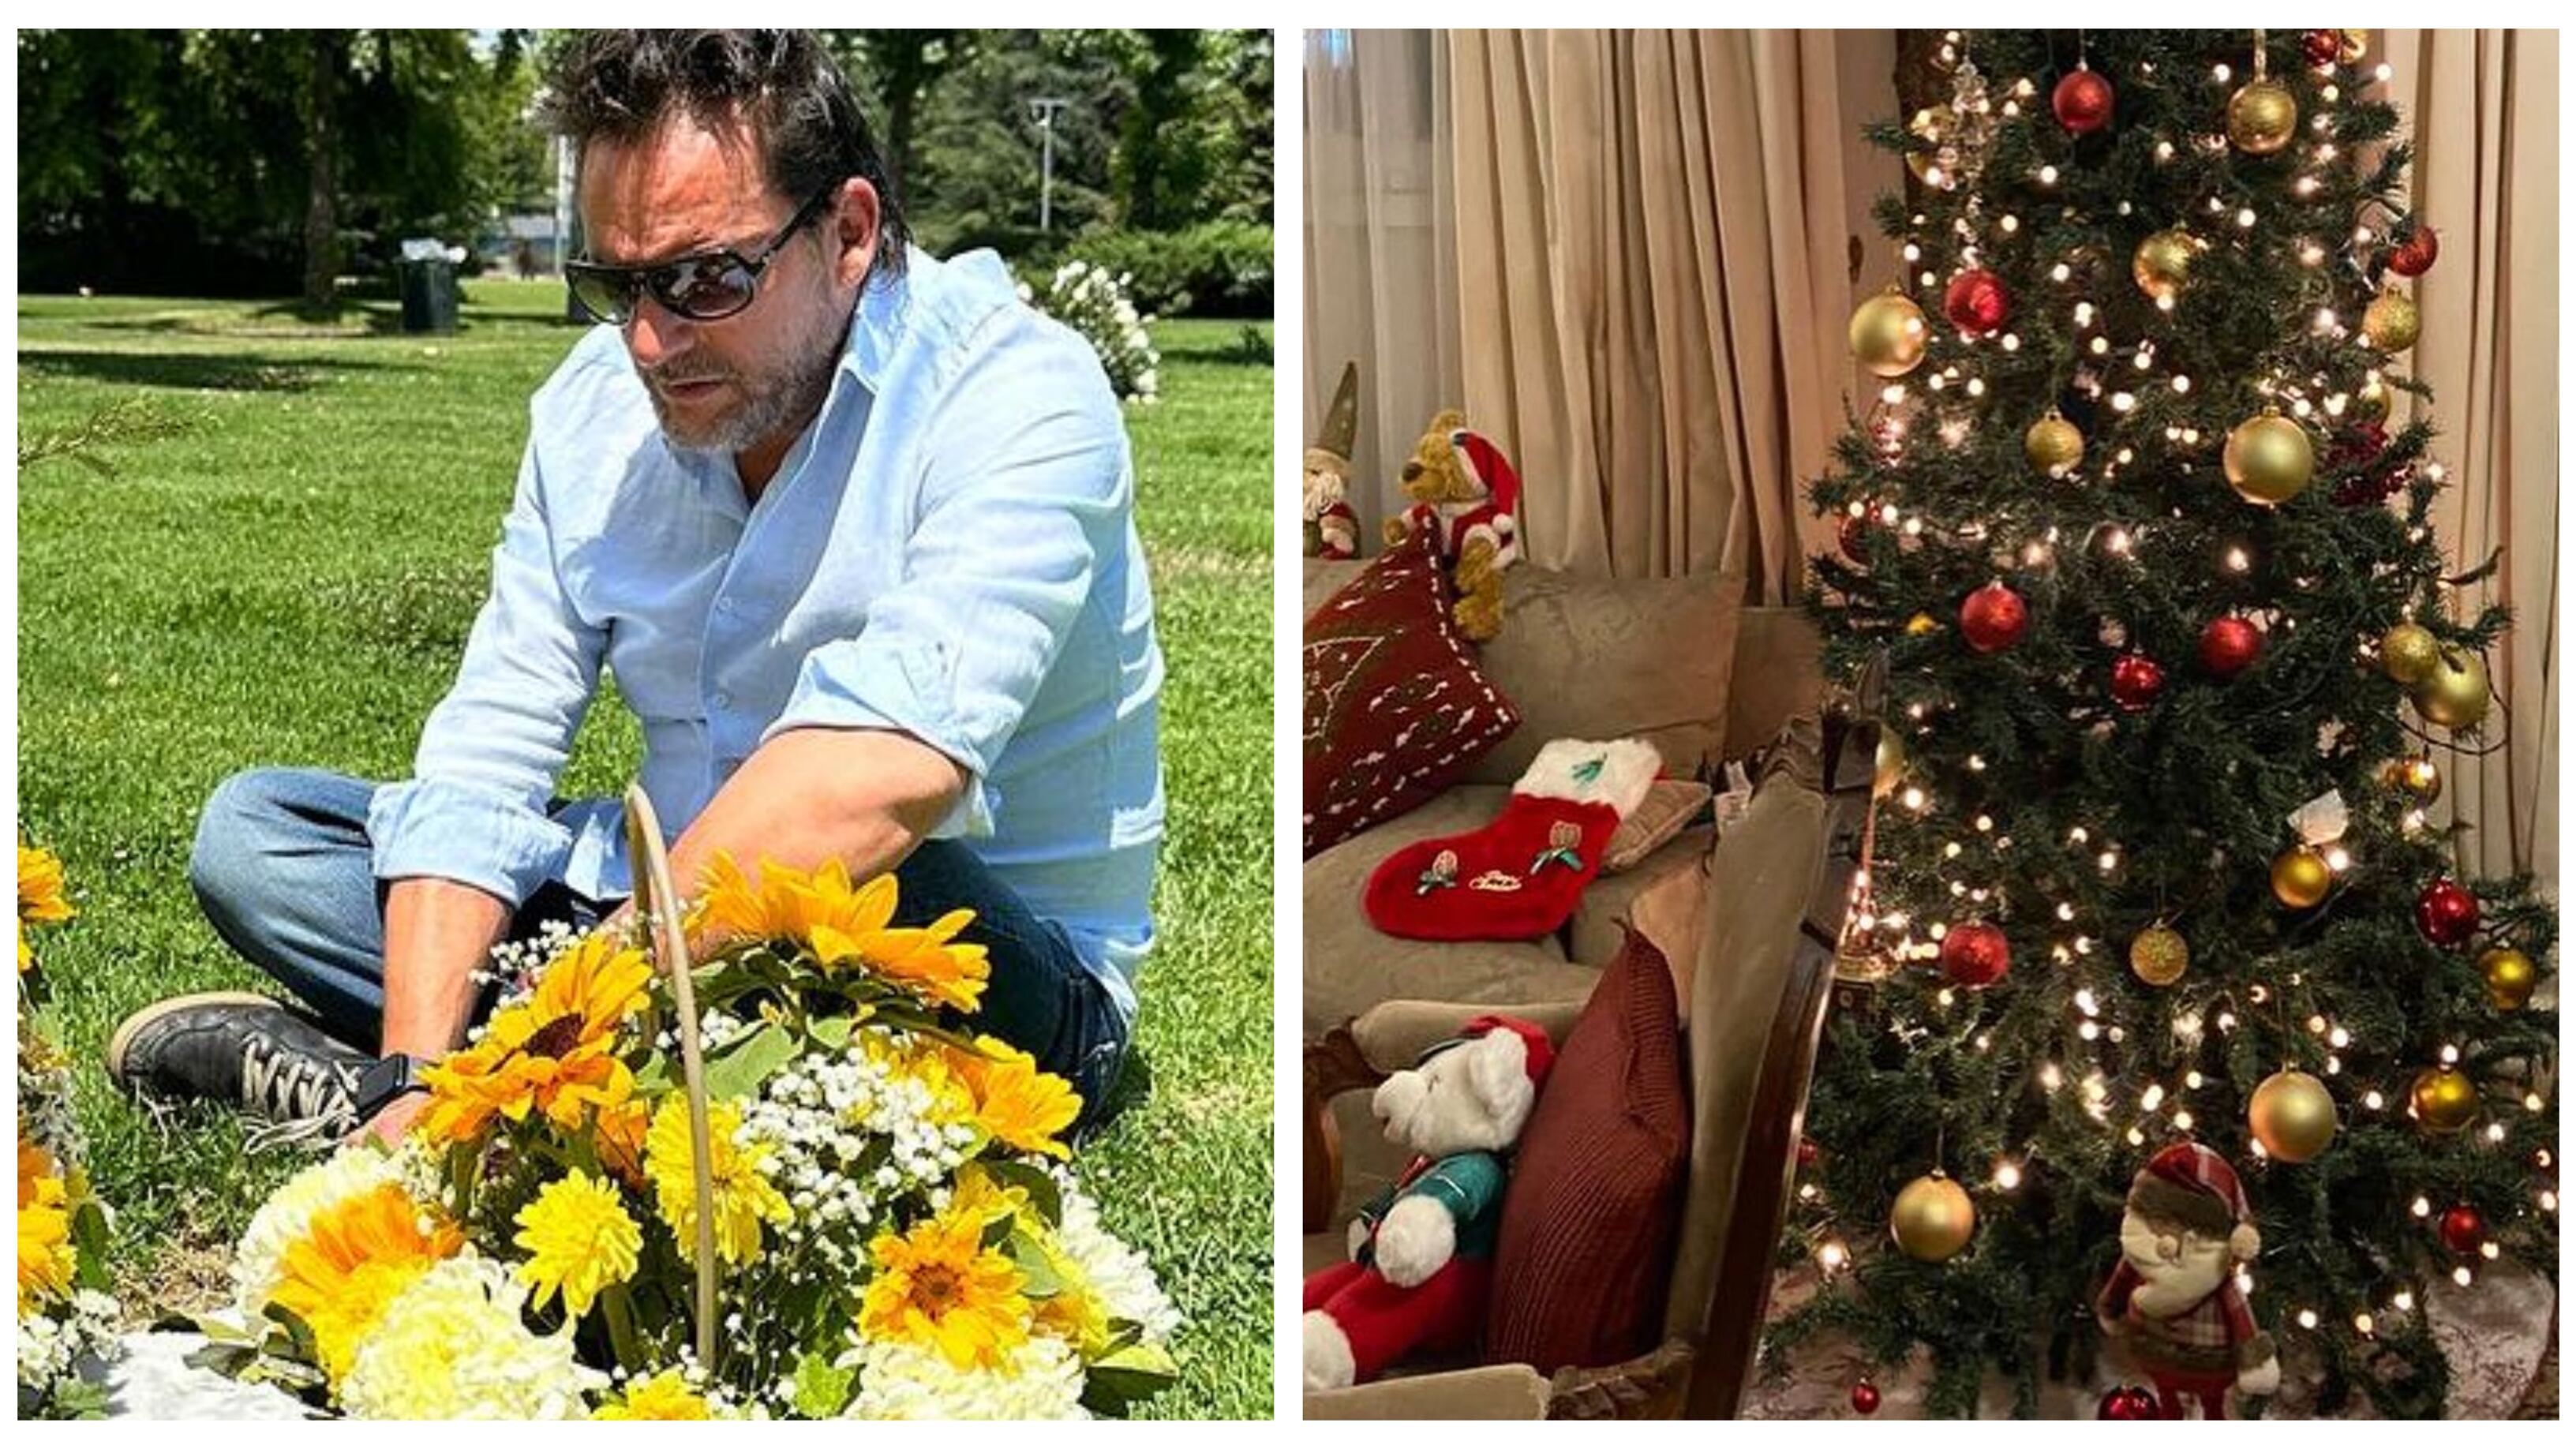 El animador de "Me Late" conmovió a sus seguidores con la publicación que realizó esta tarde en redes sociales, un homenaje navideño a sus fallecidos padres.